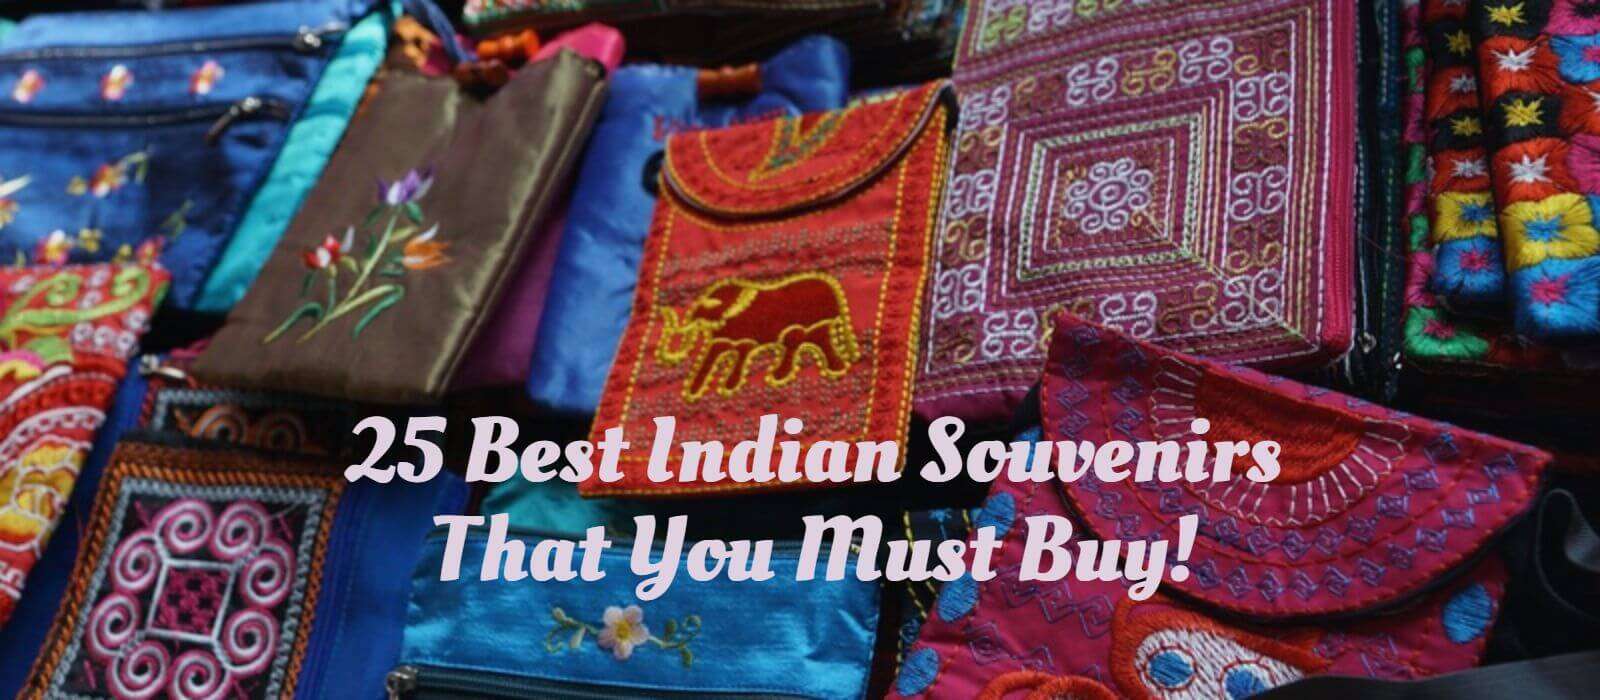 25_Best_Indian_Souvenirs